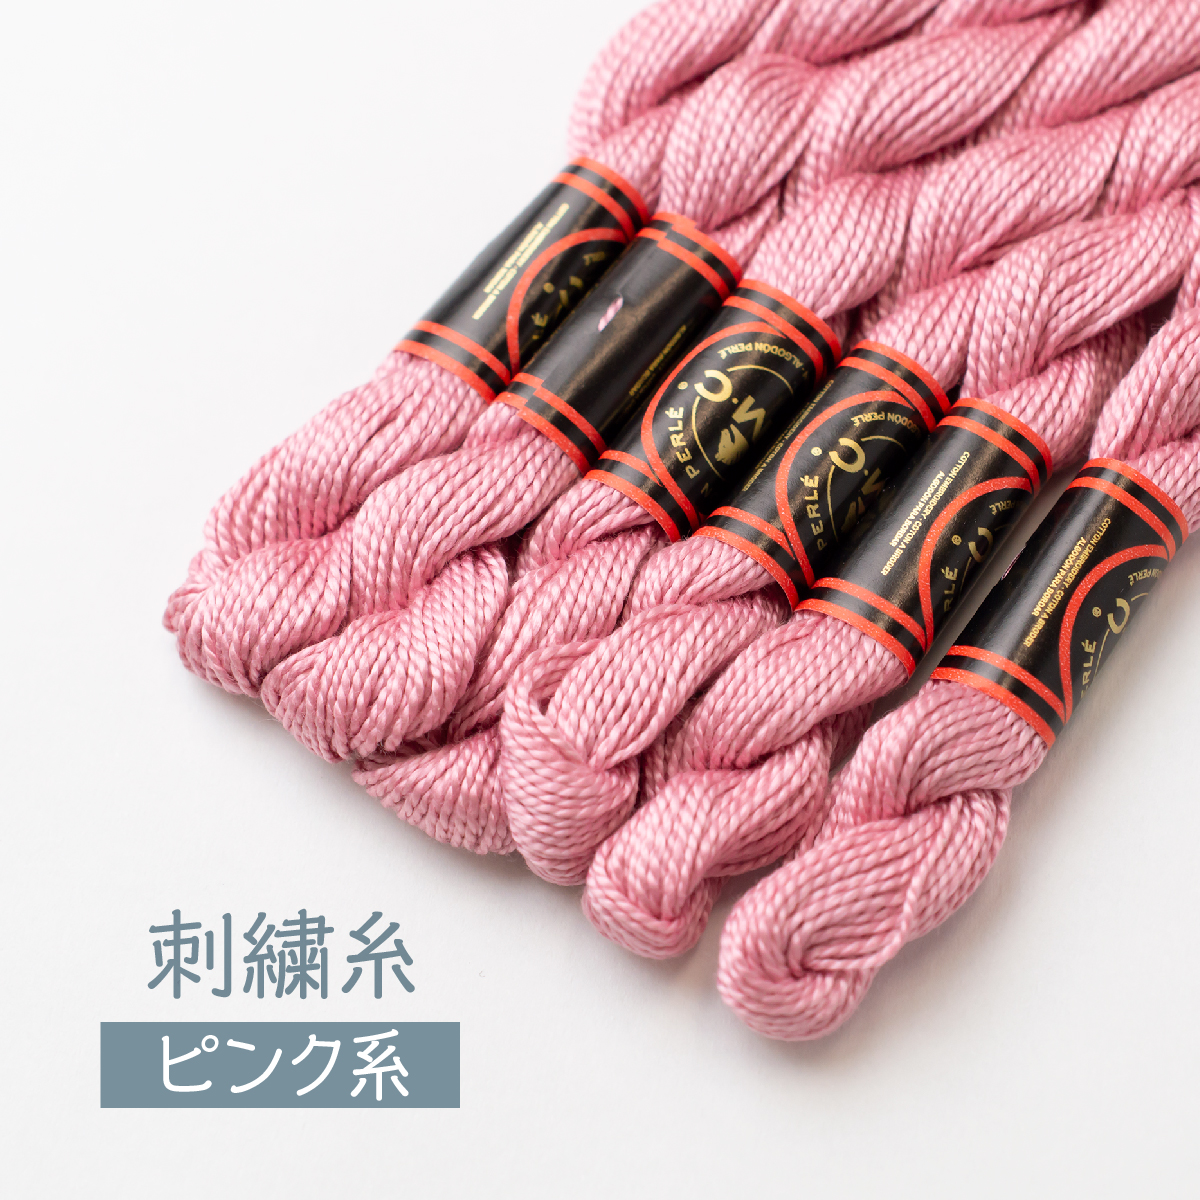 OLYMPUS 刺繍糸 ブルー系 31束 www.csu.uy